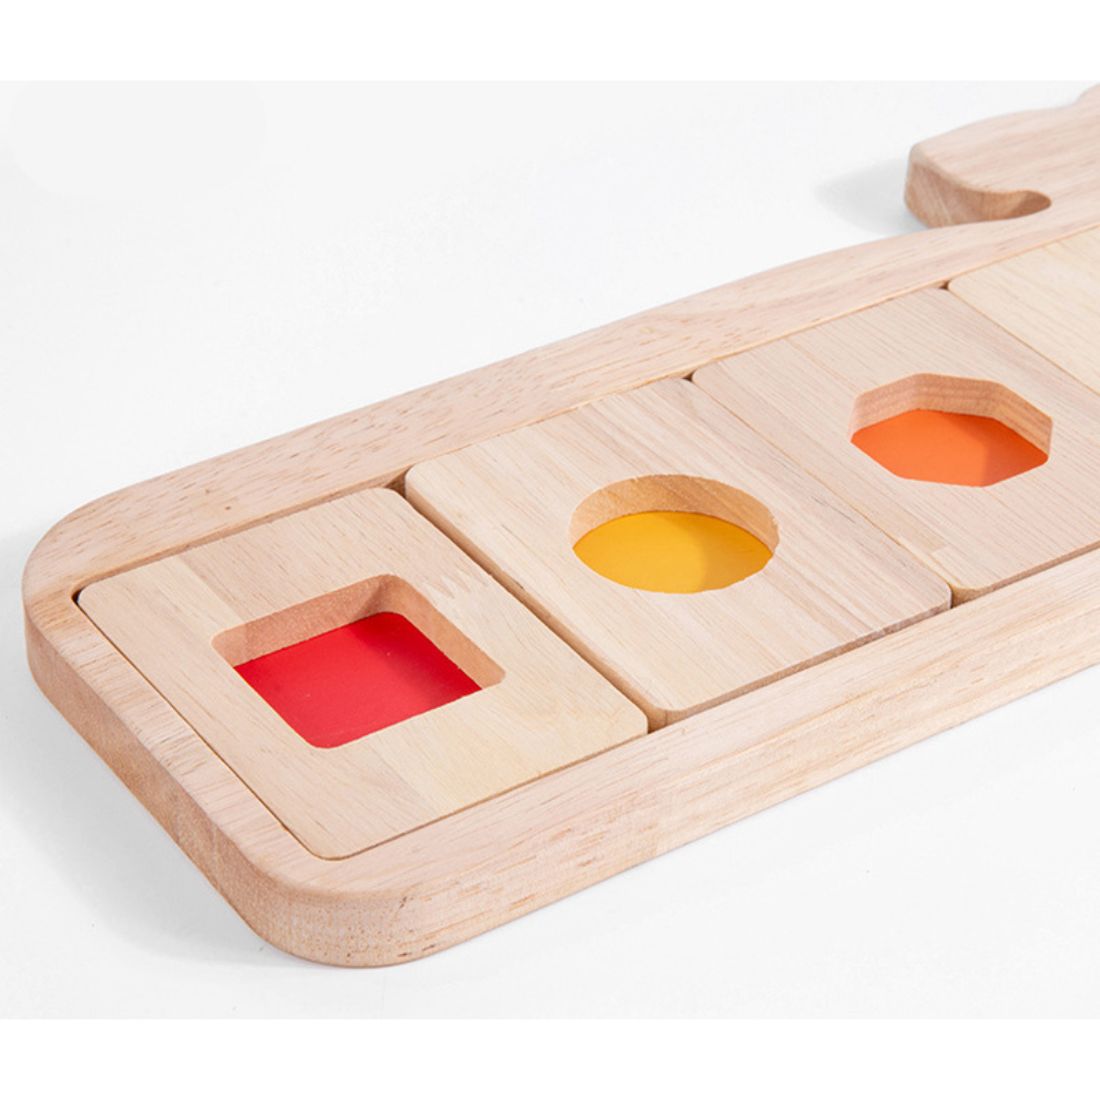 木製 型はめ パズル モンテッソーリ 知育玩具 おもちゃ A1117